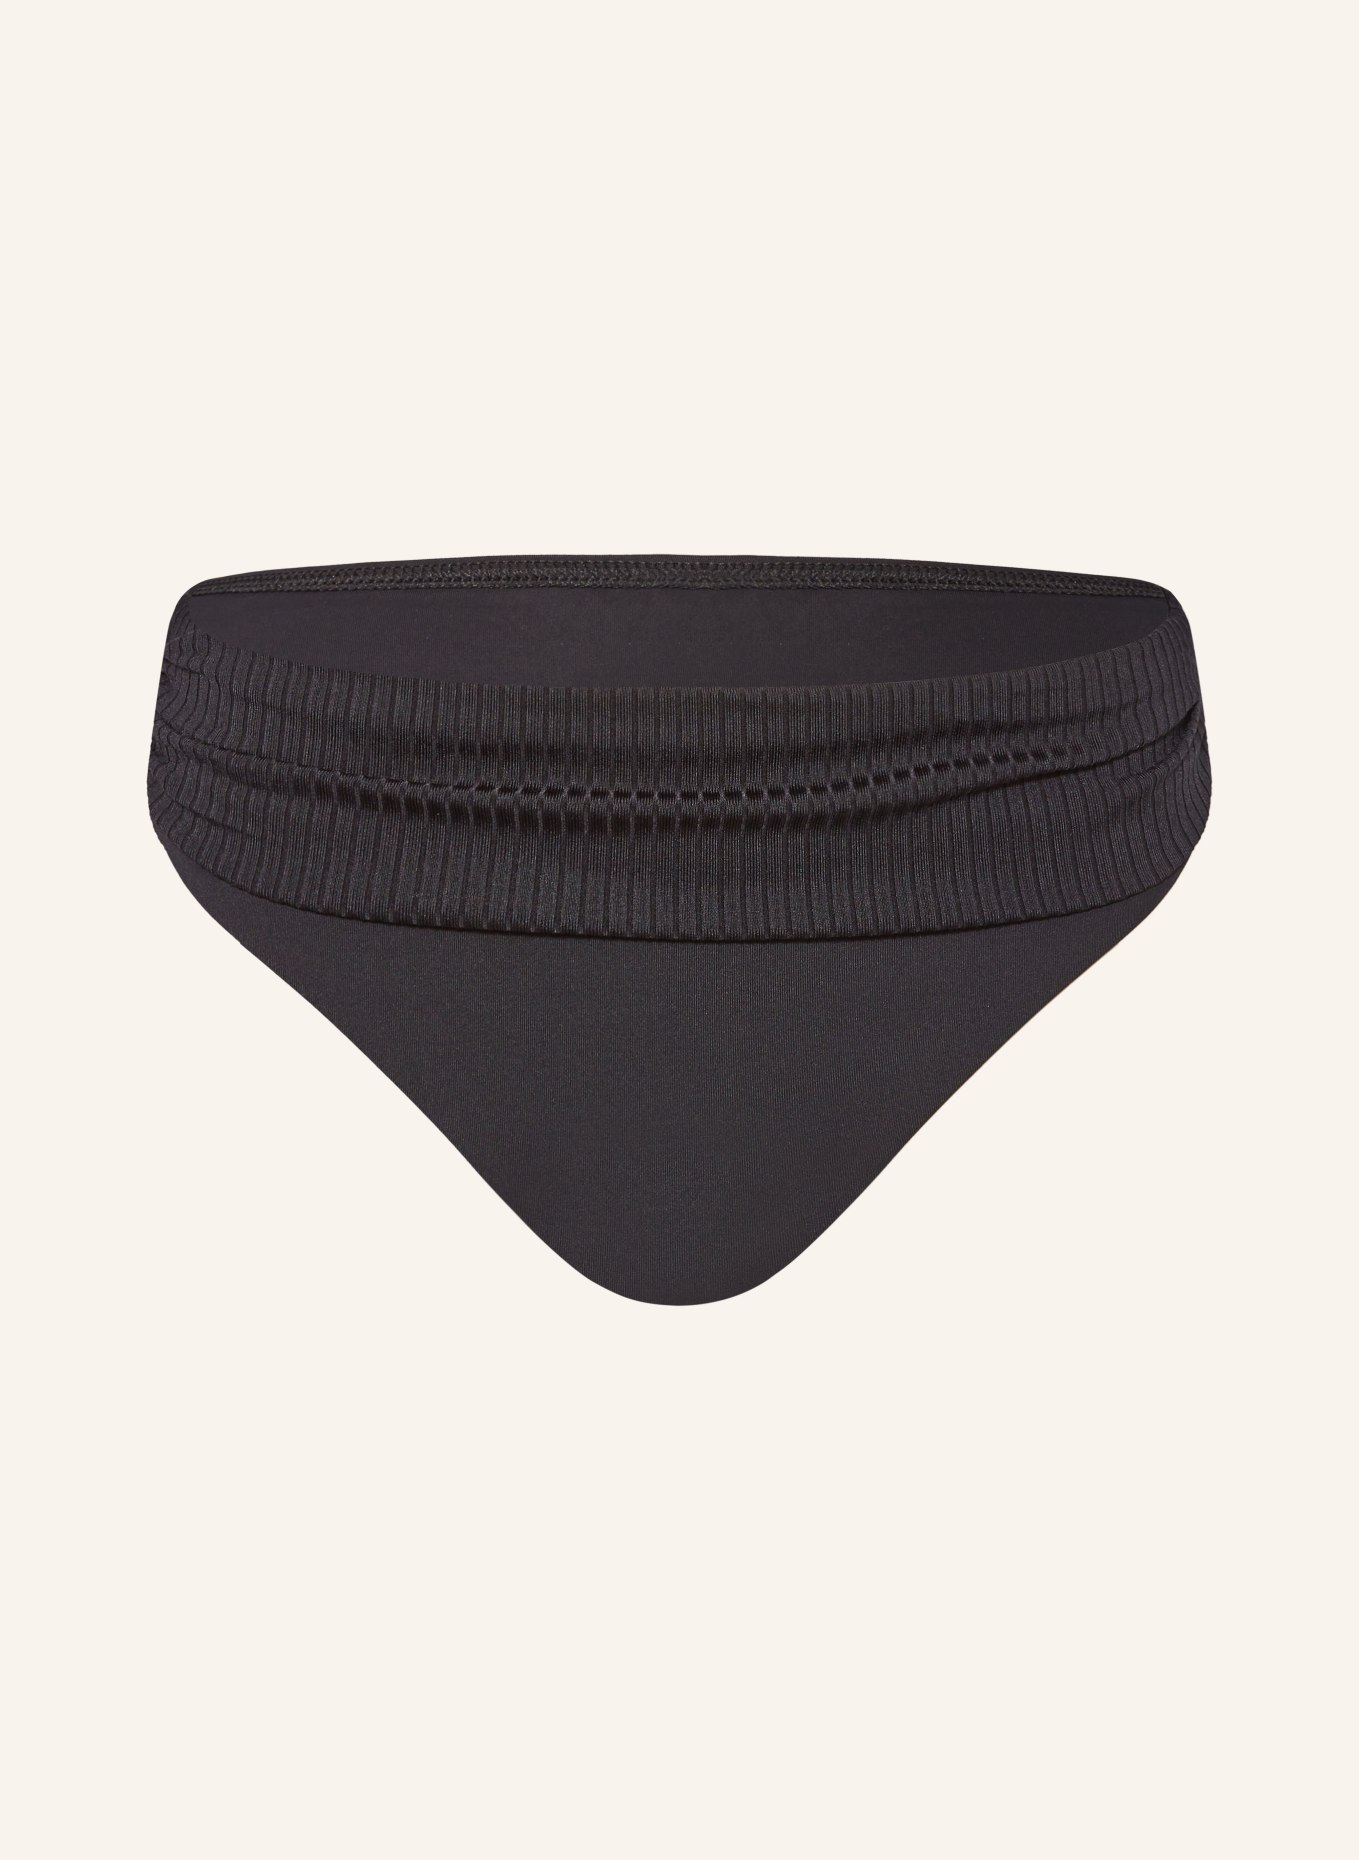 CYELL Basic bikini bottoms CAVIAR, Color: BLACK (Image 1)